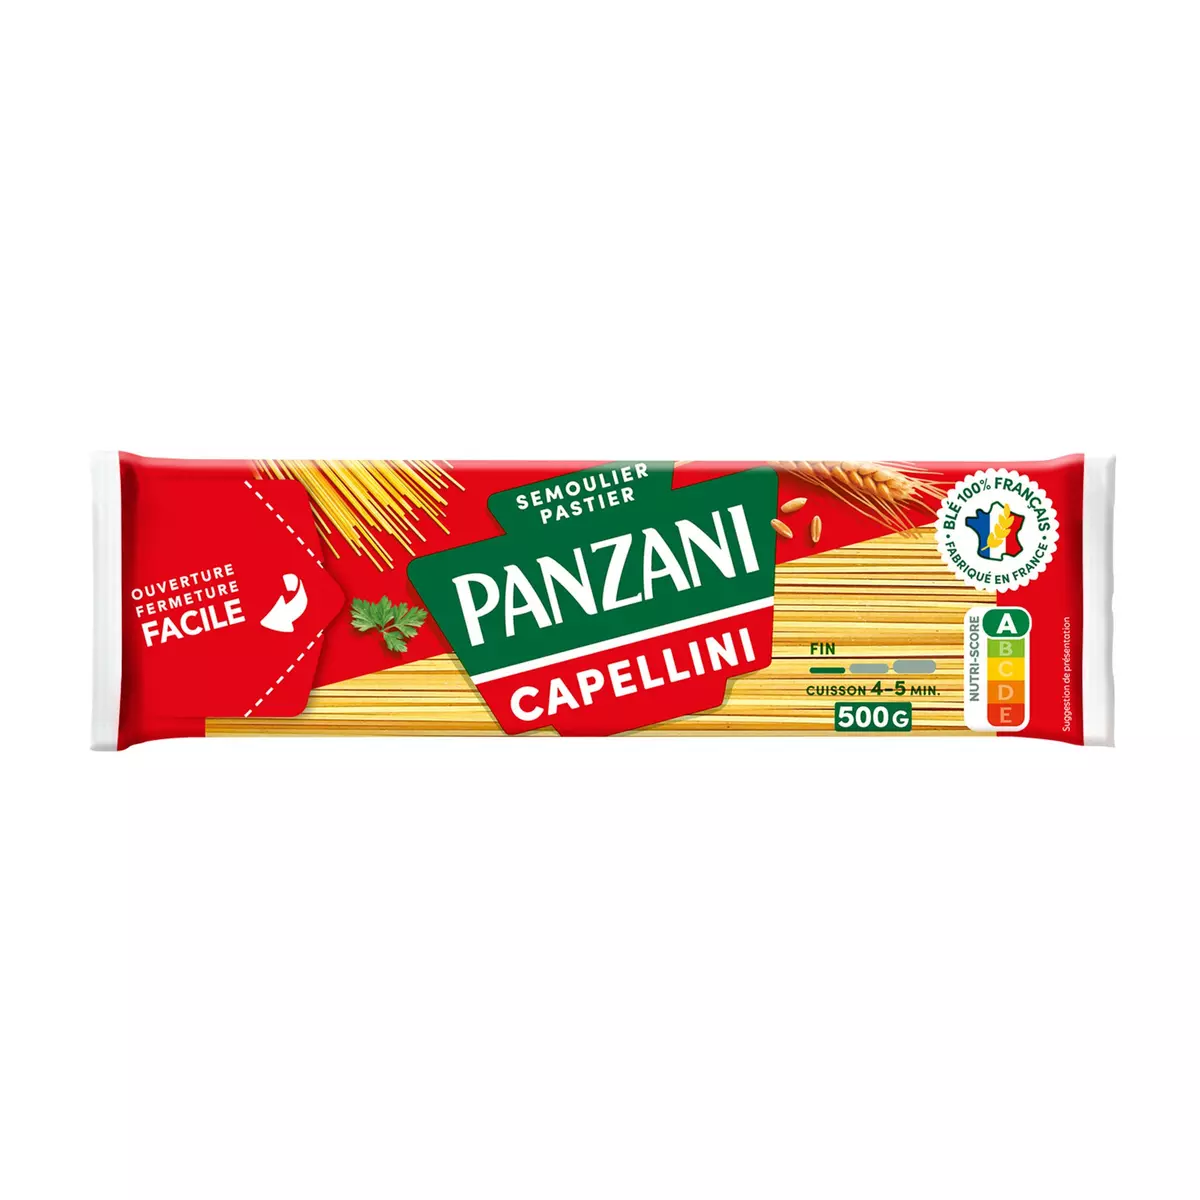 PANZANI Capellini 500g